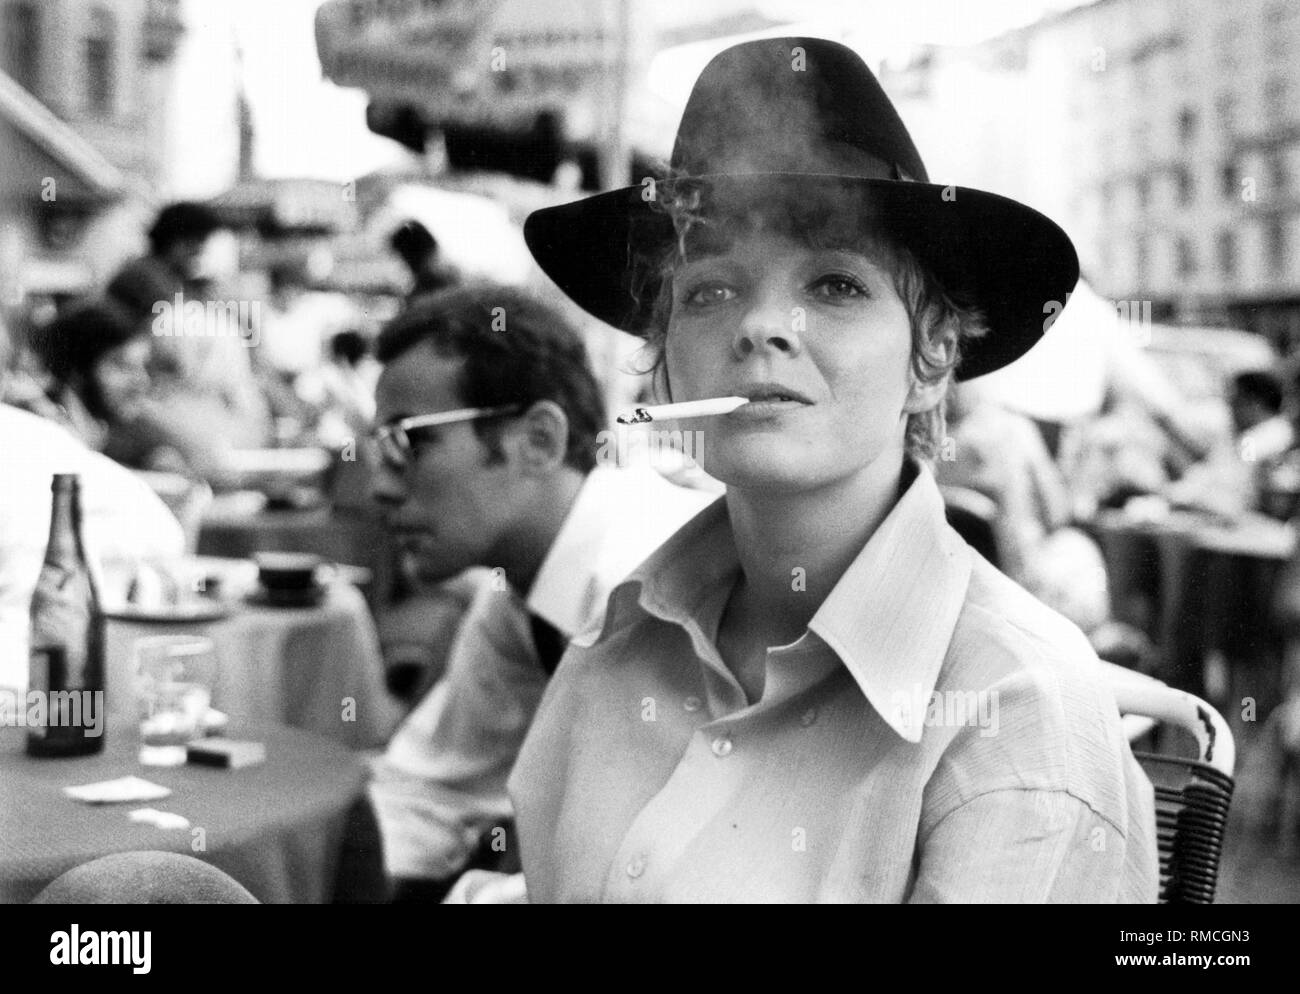 Gila von Weitershausen (nato nel 1944), un'attrice tedesca. La foto è stata scattata in un caffè di Schwabing Monaco di Baviera. Foto Stock